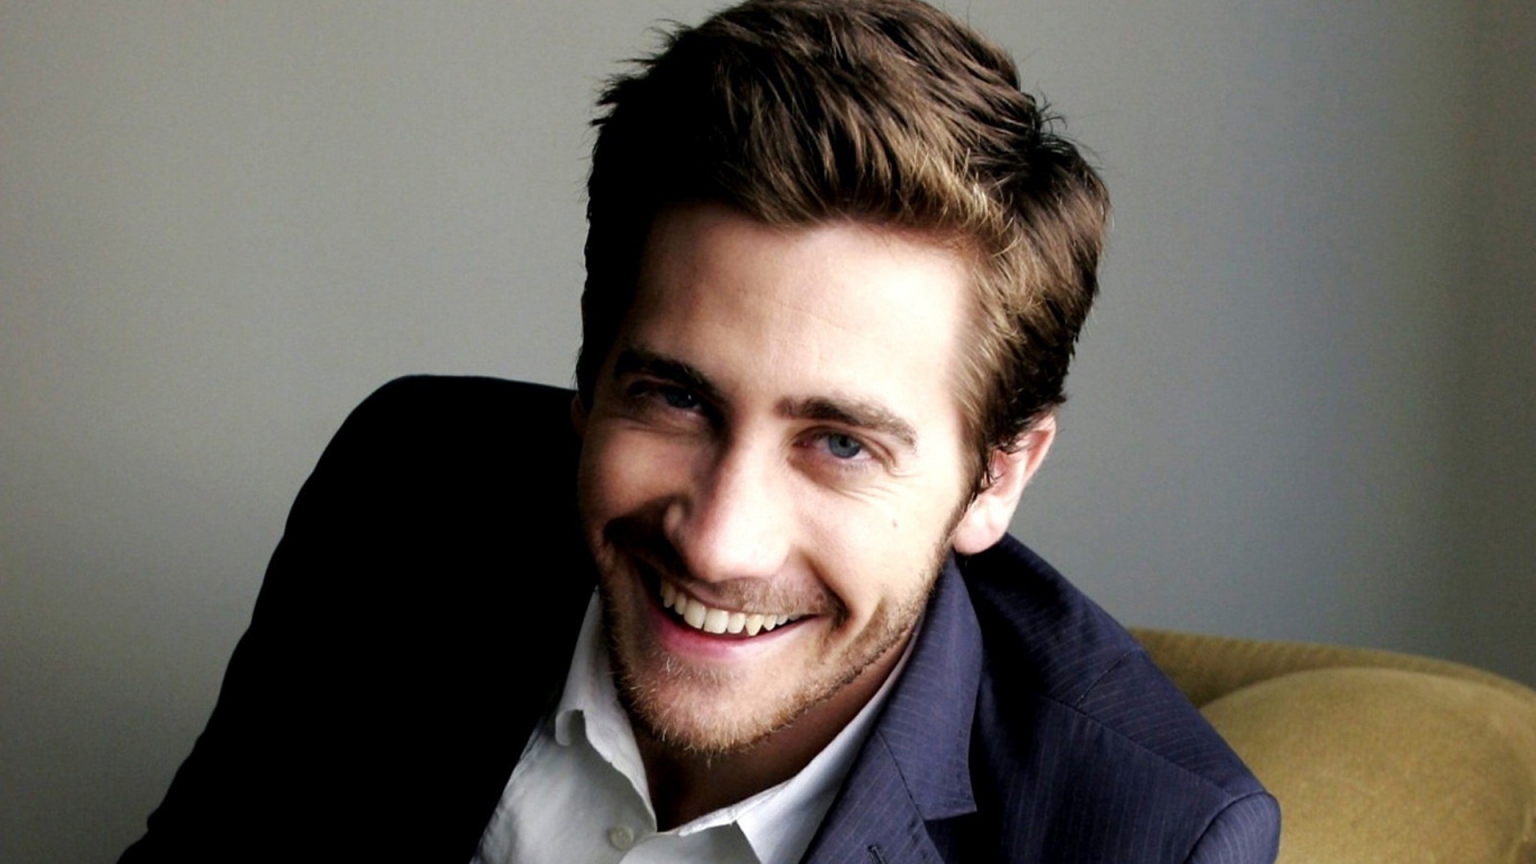 Jake Gyllenhaal Smile for 1536 x 864 HDTV resolution